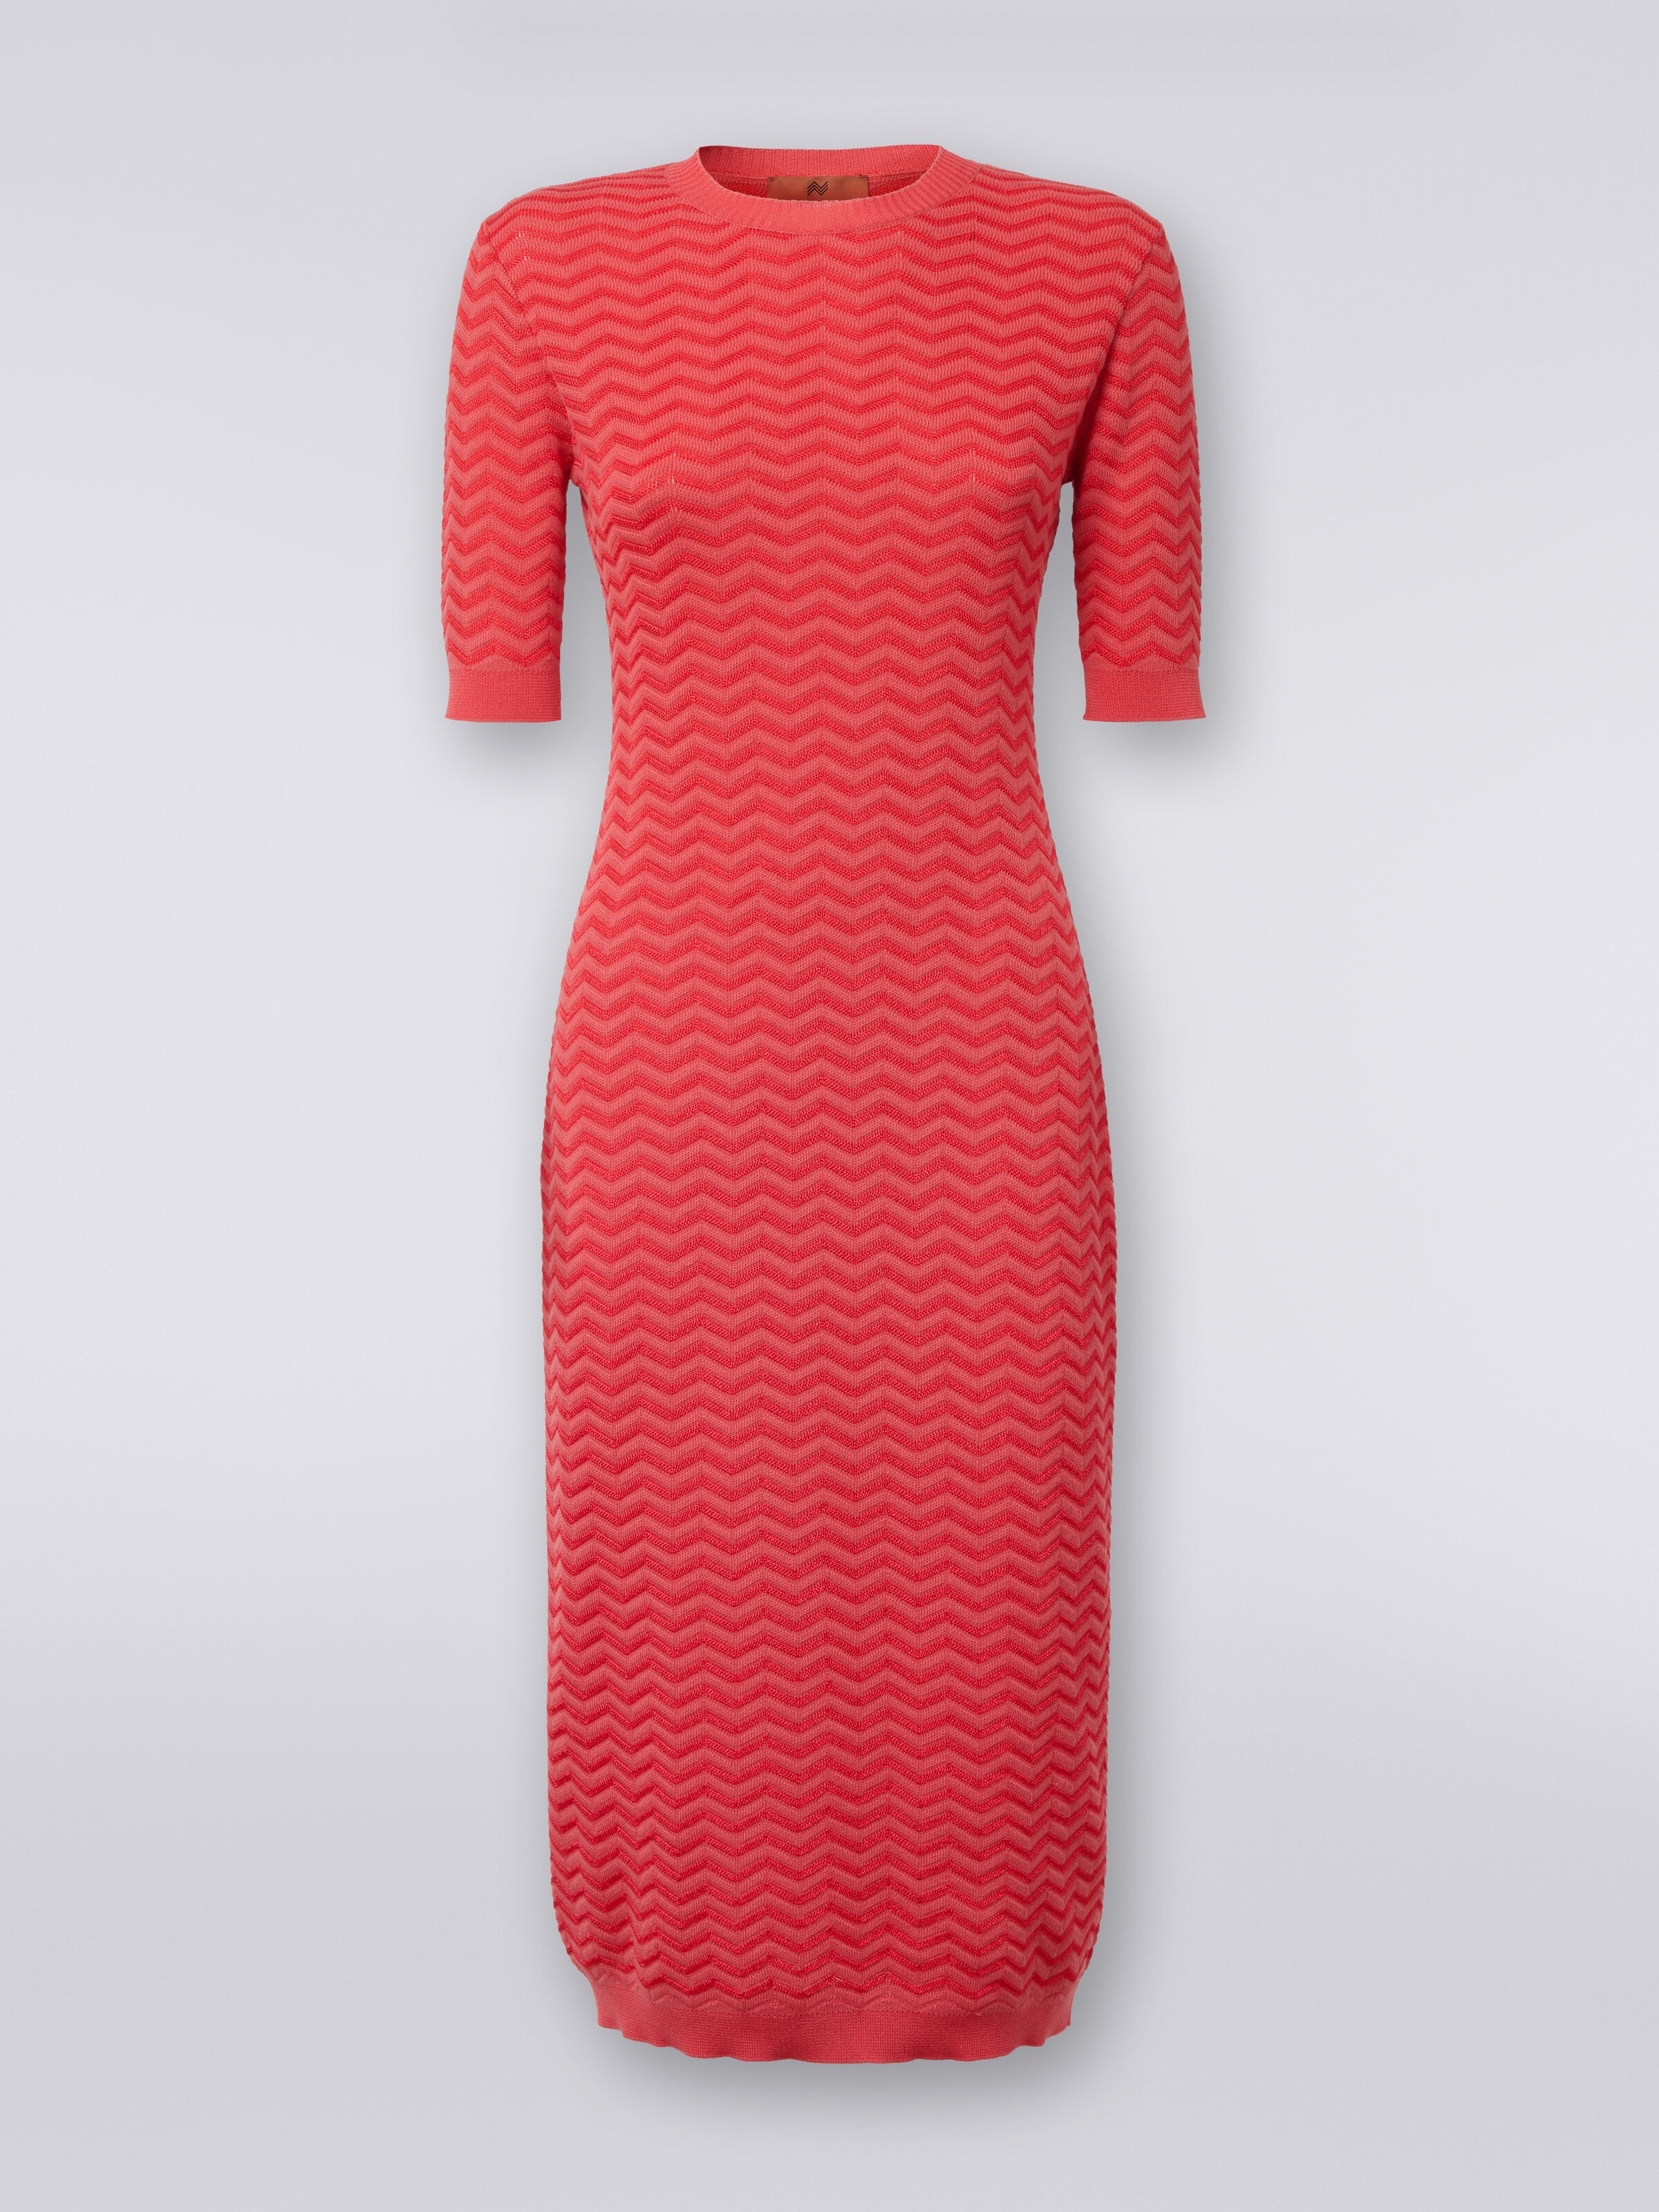 Longuette-Kleid aus Strick mit Chevronmuster und rundem Halsausschnitt, Rot  - 0